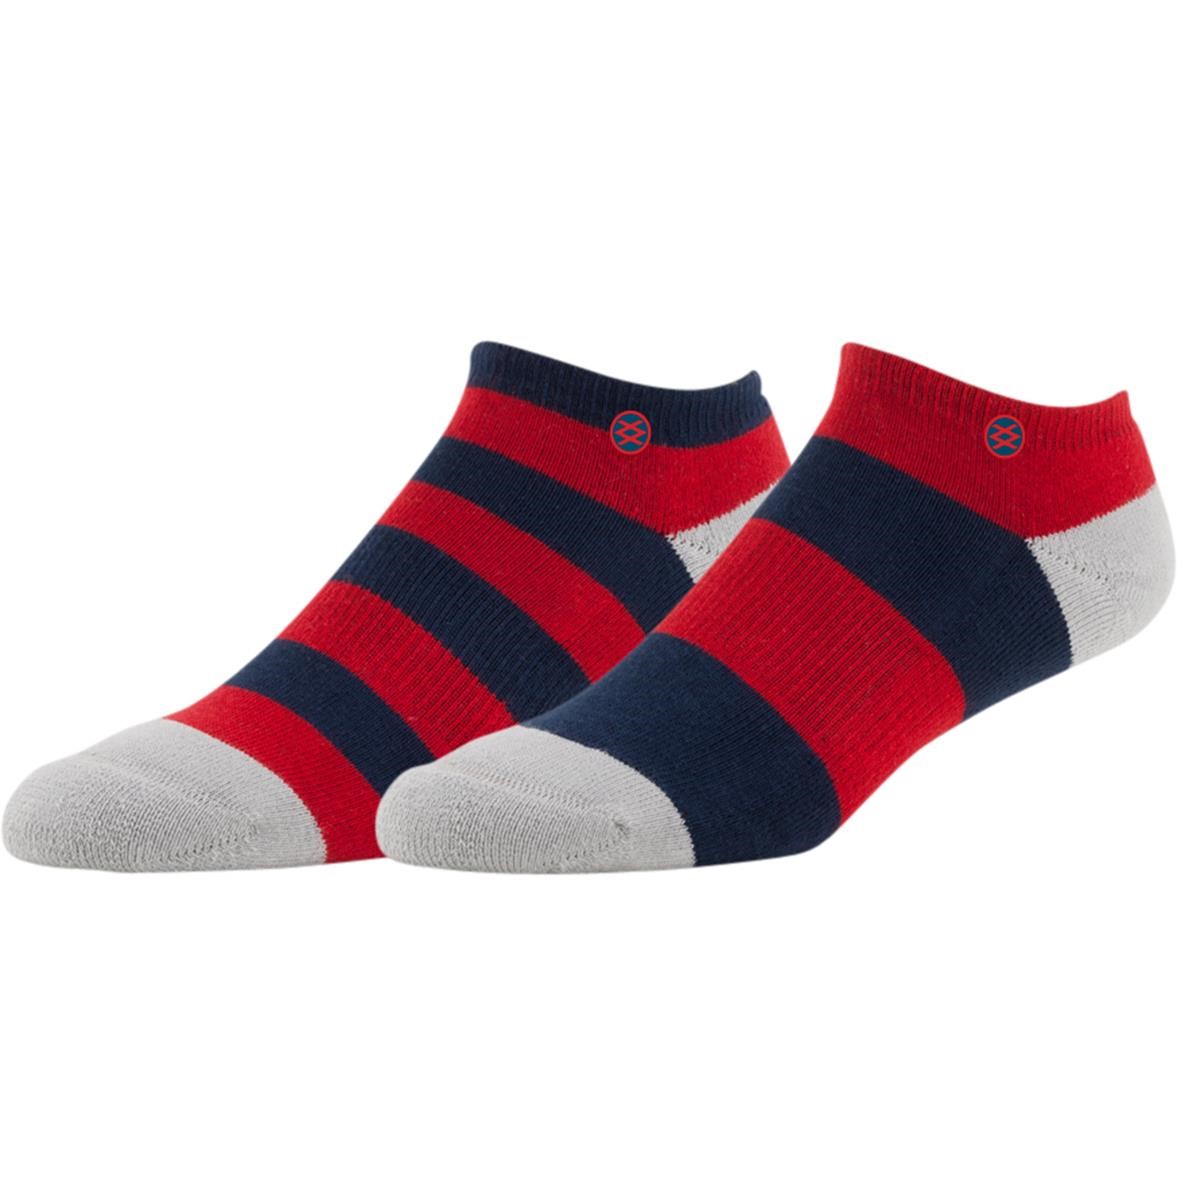 Freizeit/Streetwear Bekleidung-Socken/Strümpfe/Strumpfhosen - Stance Socken Mariner Navy, Low